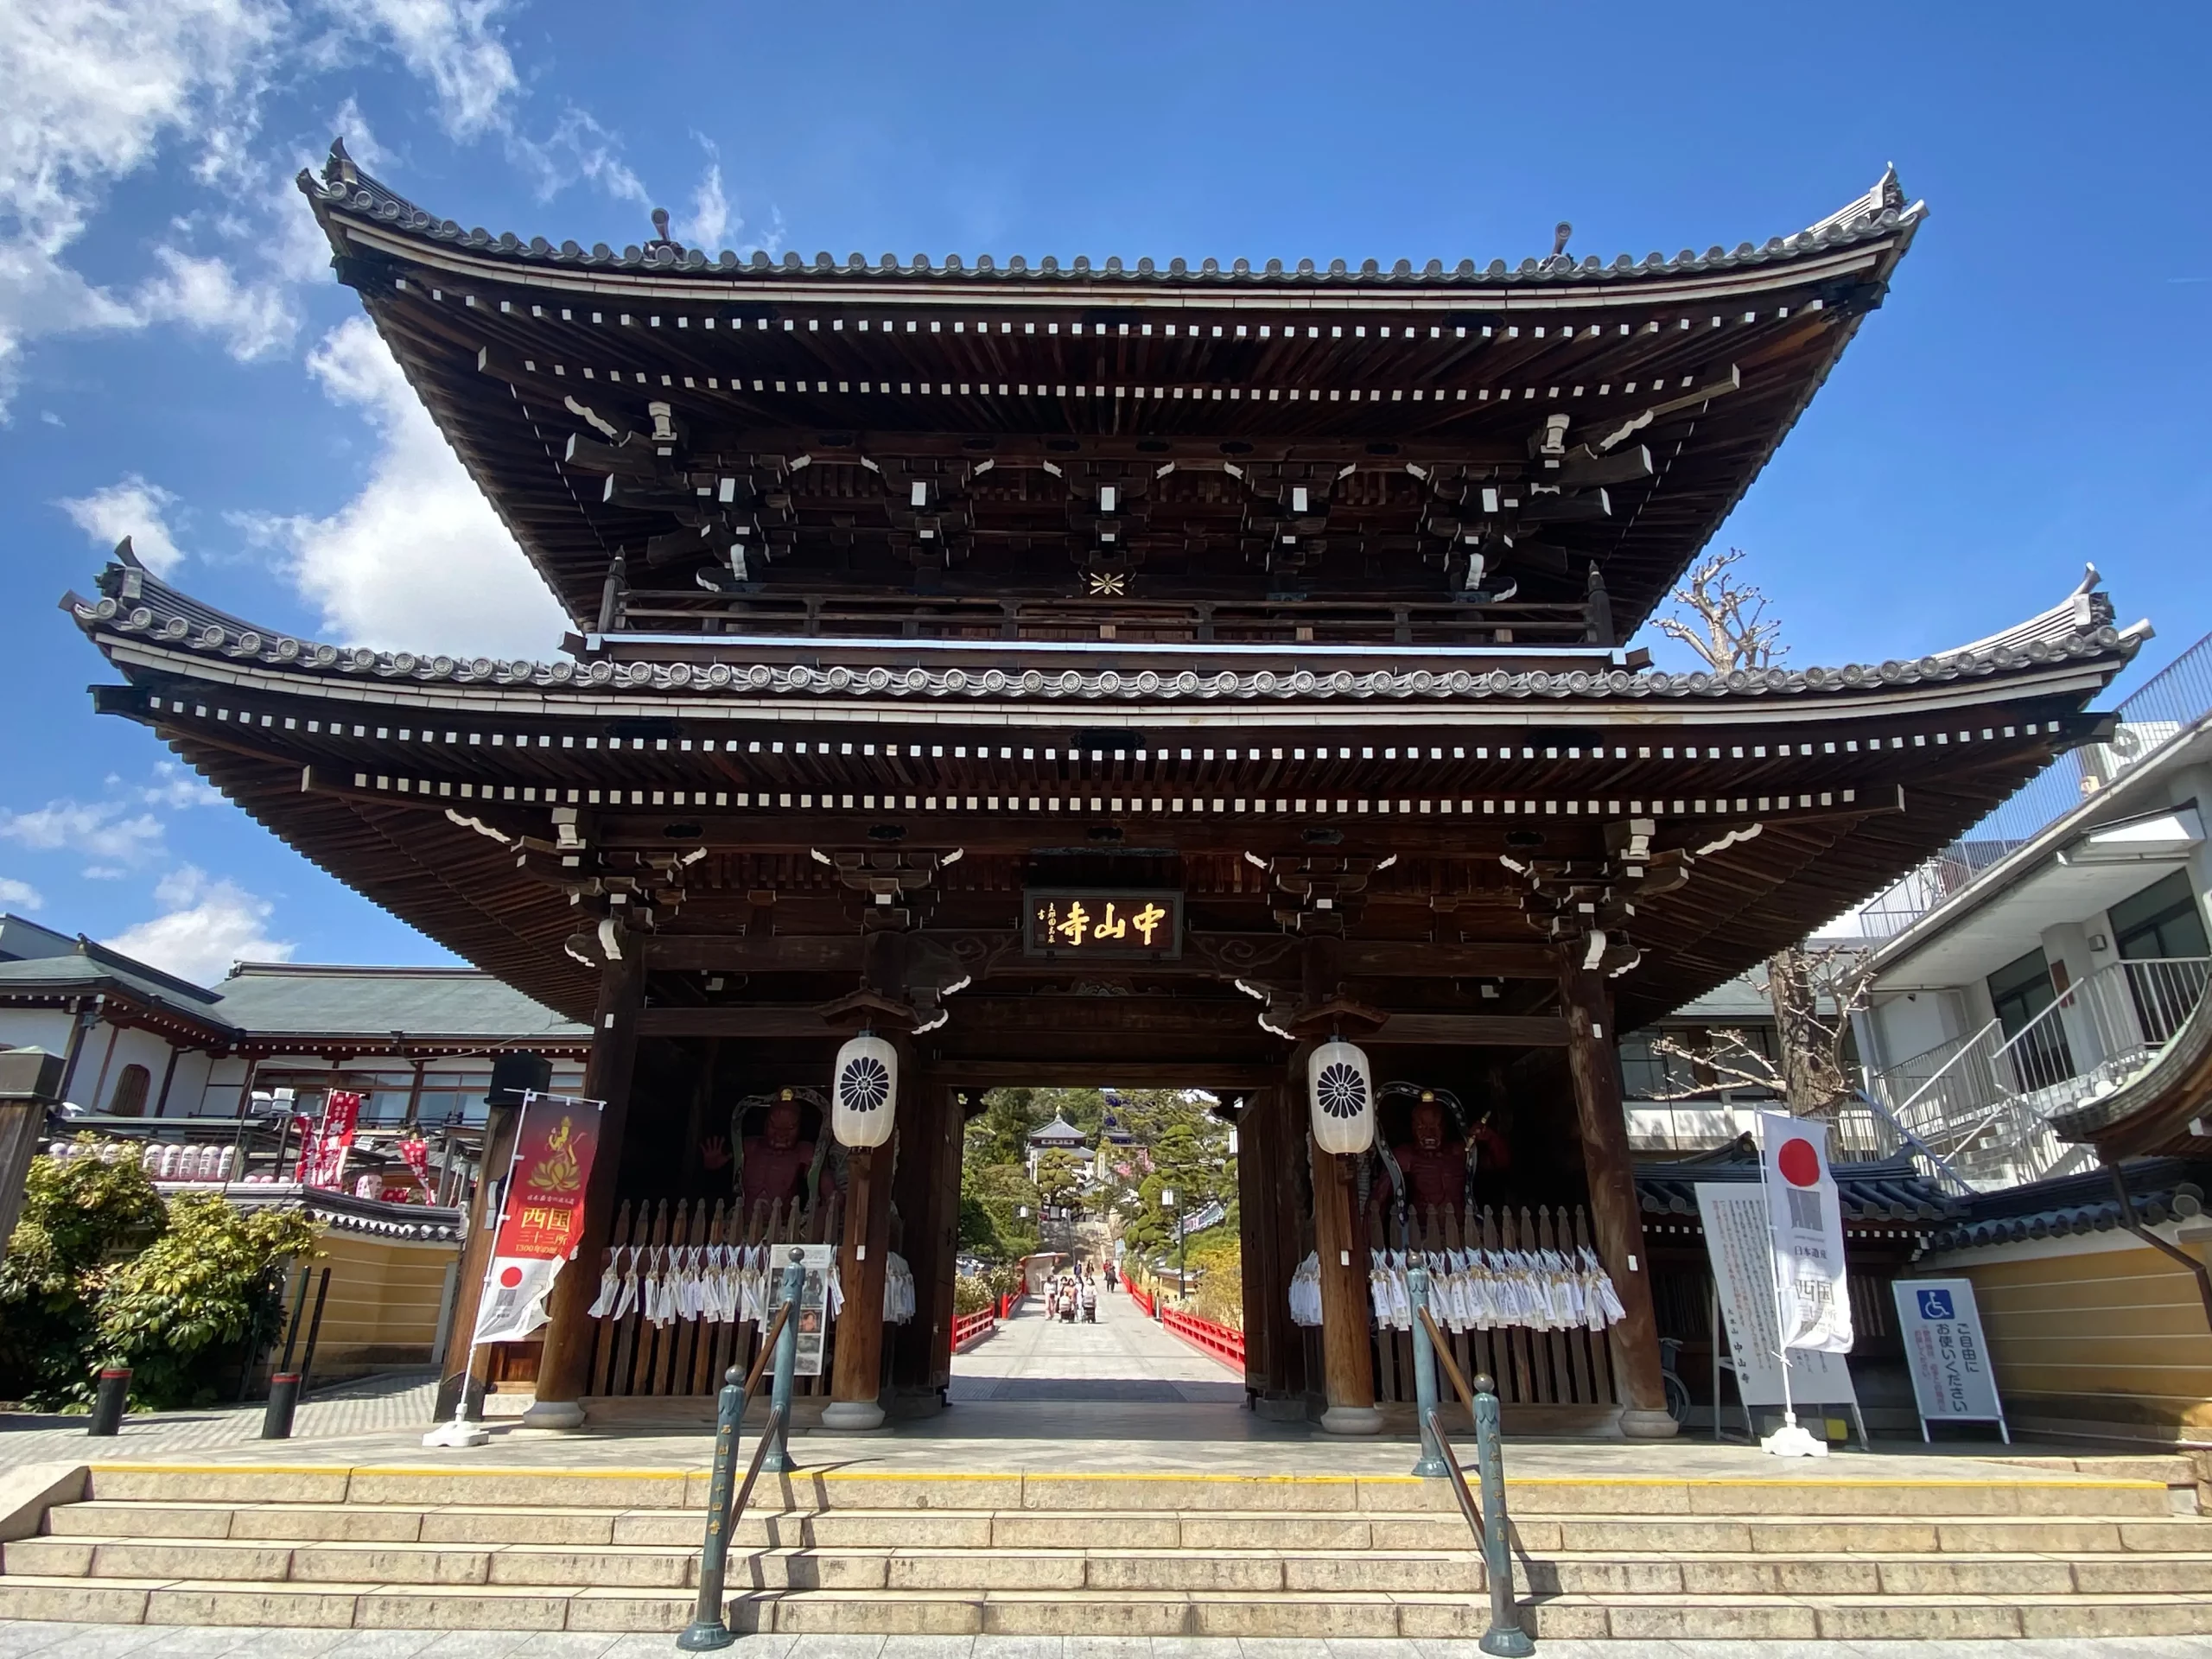 Có gì đặc biệt ở ngôi chùa cầu an nổi tiếng – Nakayama-dera?